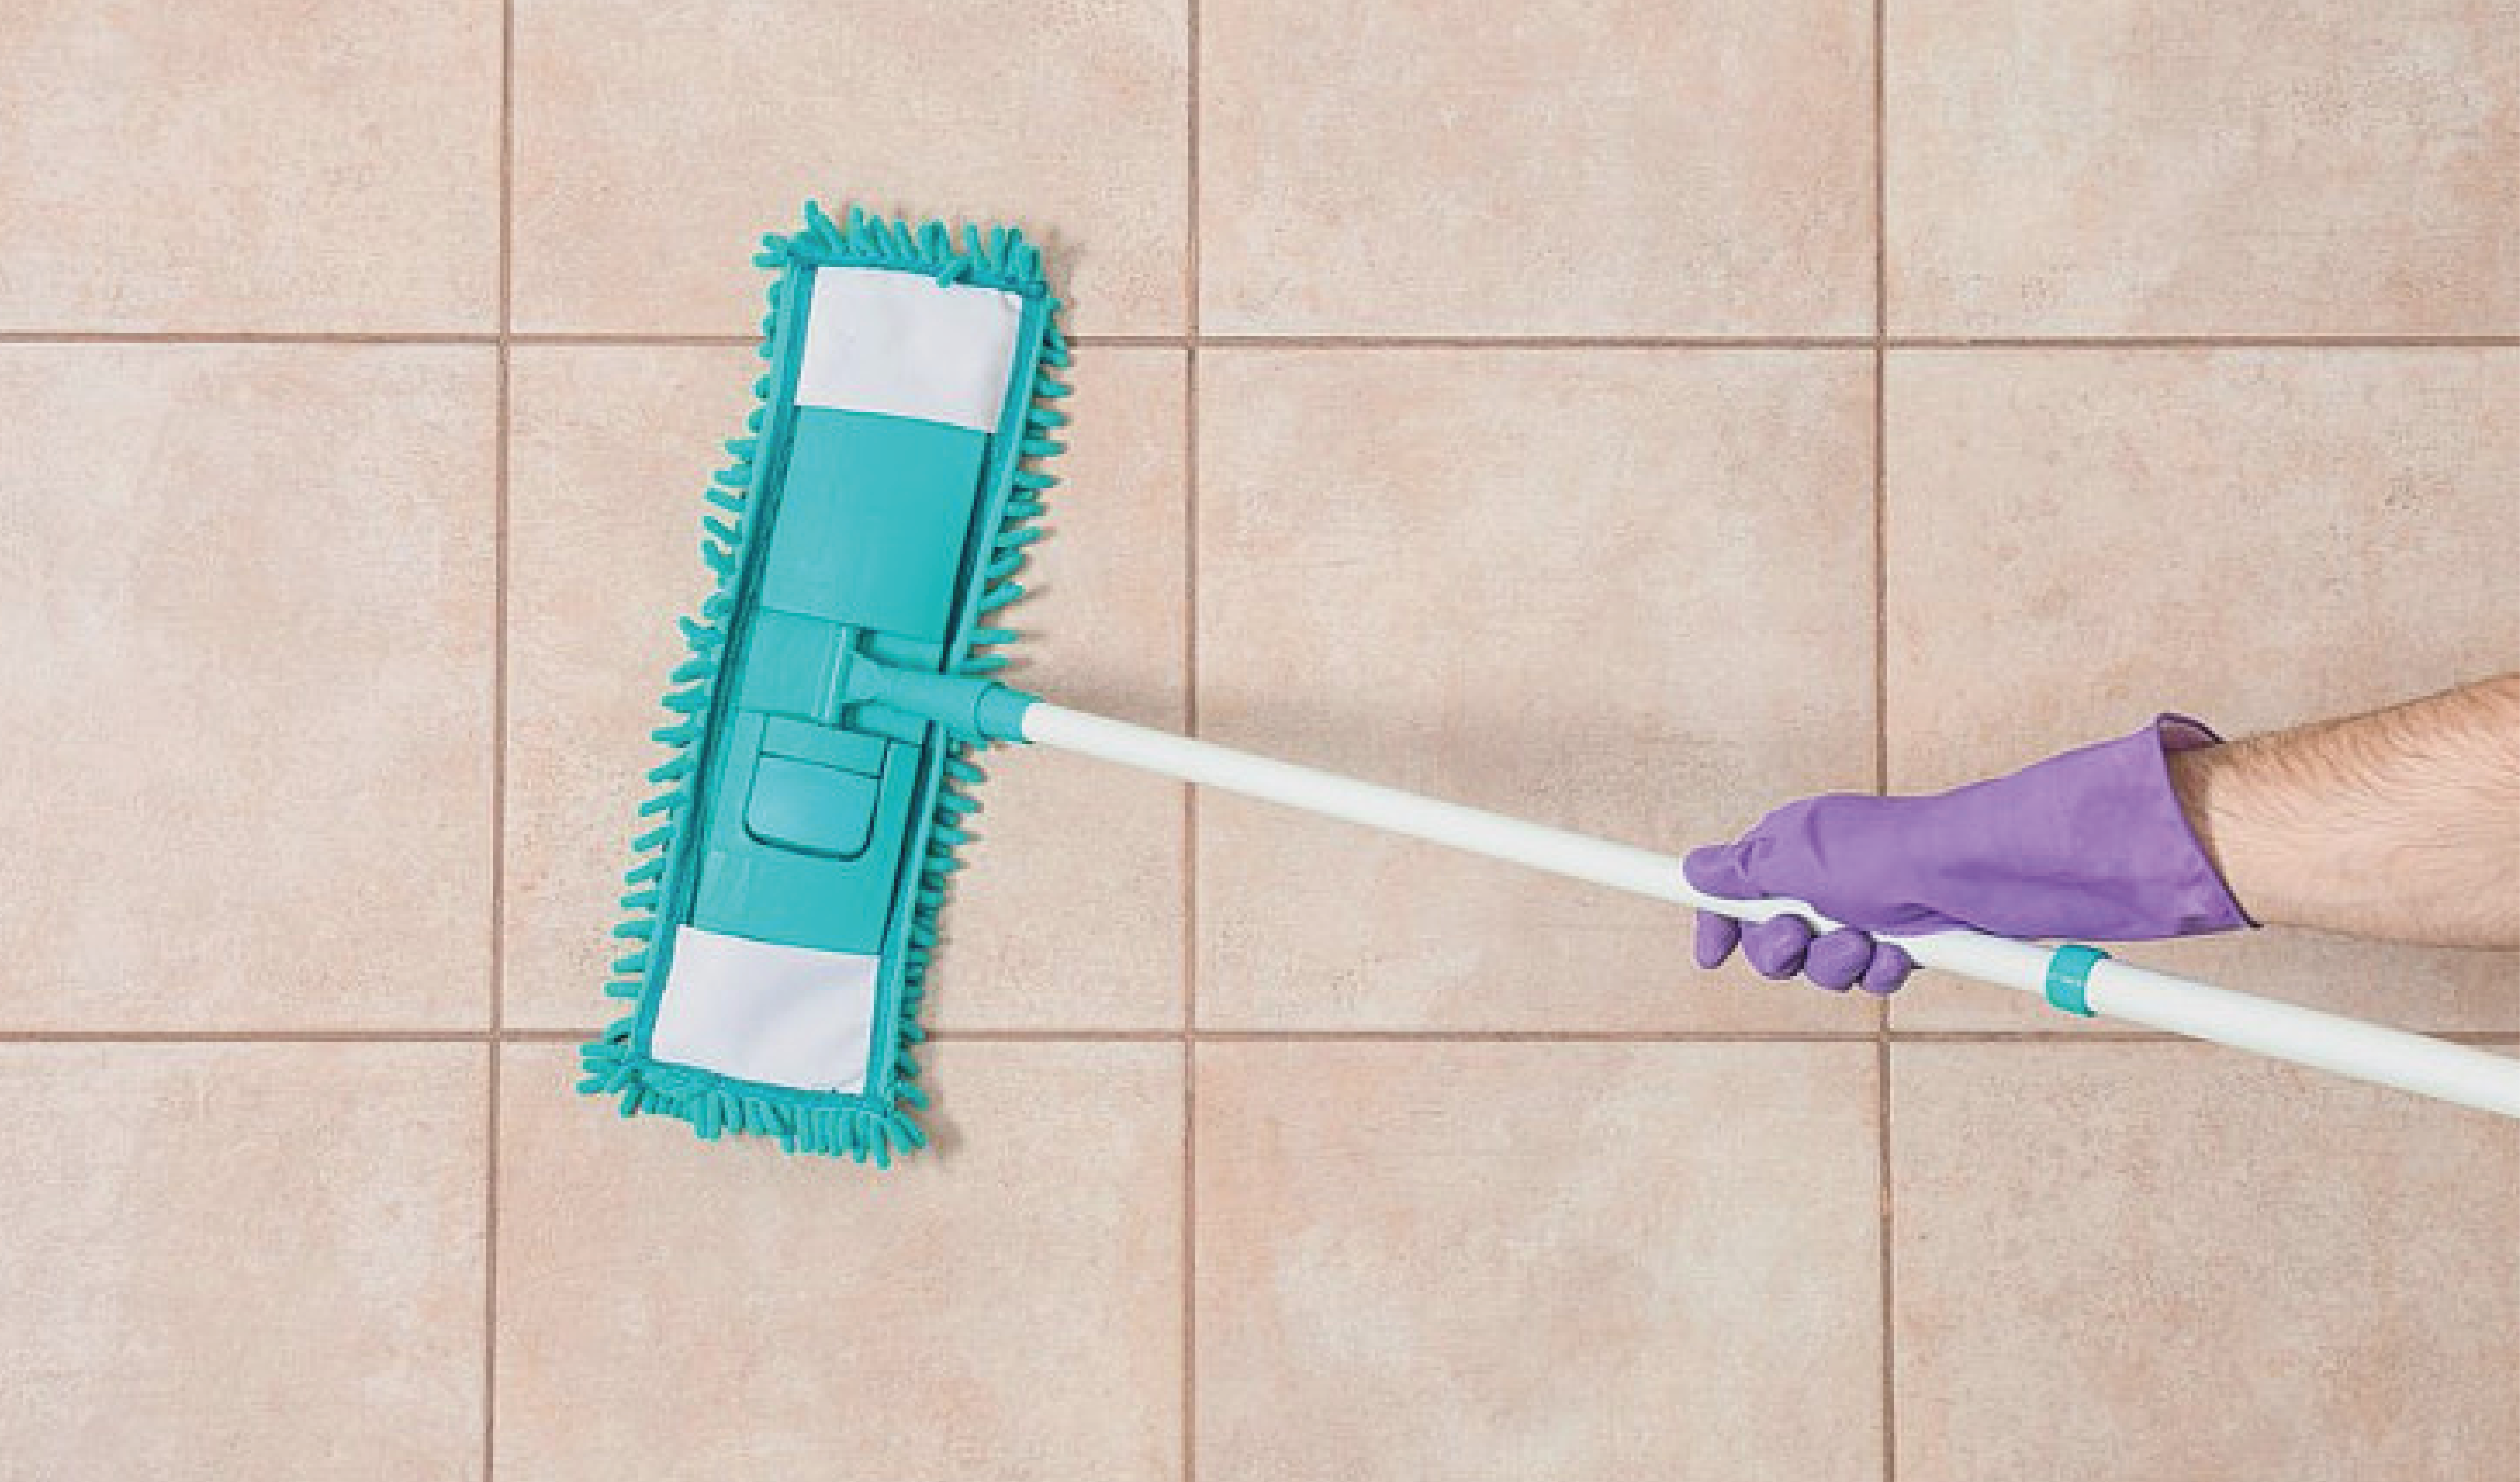 Cómo dar brillo a los azulejos con vinagre: un truco de limpieza efectivo, RESPUESTAS